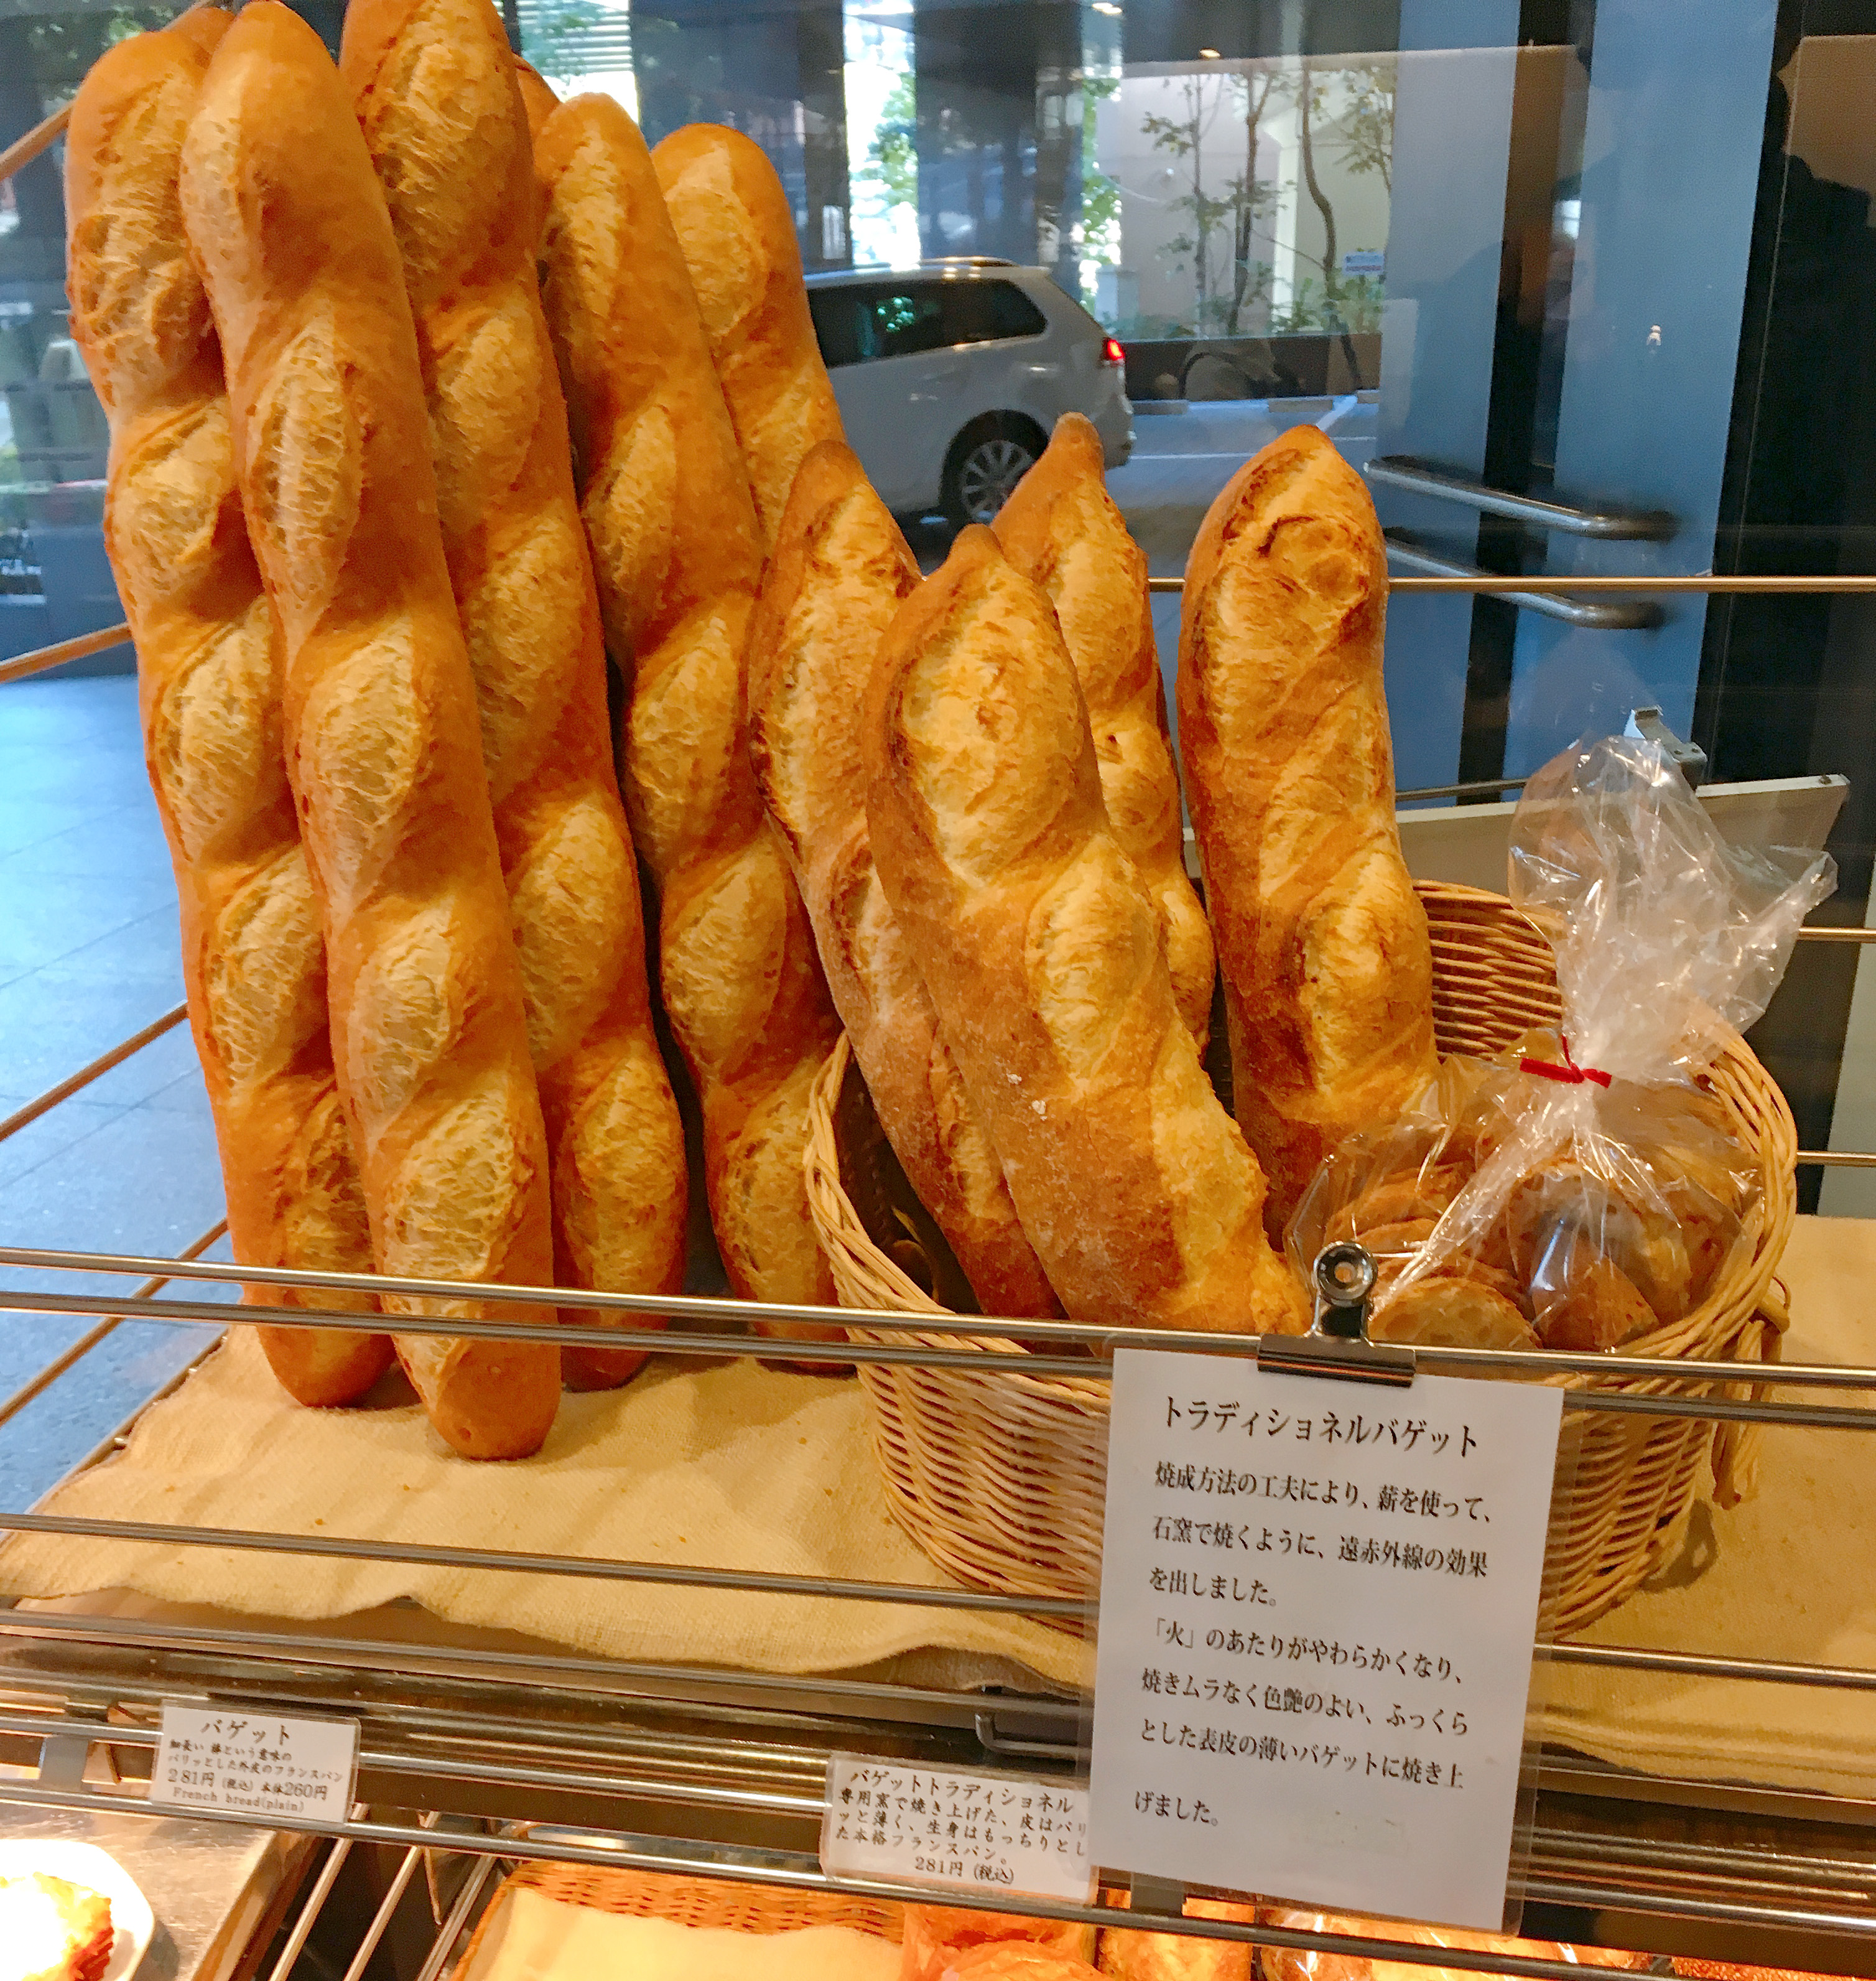 パン好きなら知ってて当たり前 日本で最初に本格フランスパンを製造した店 関口フランスパン 東京 目白坂 ロケットニュース24